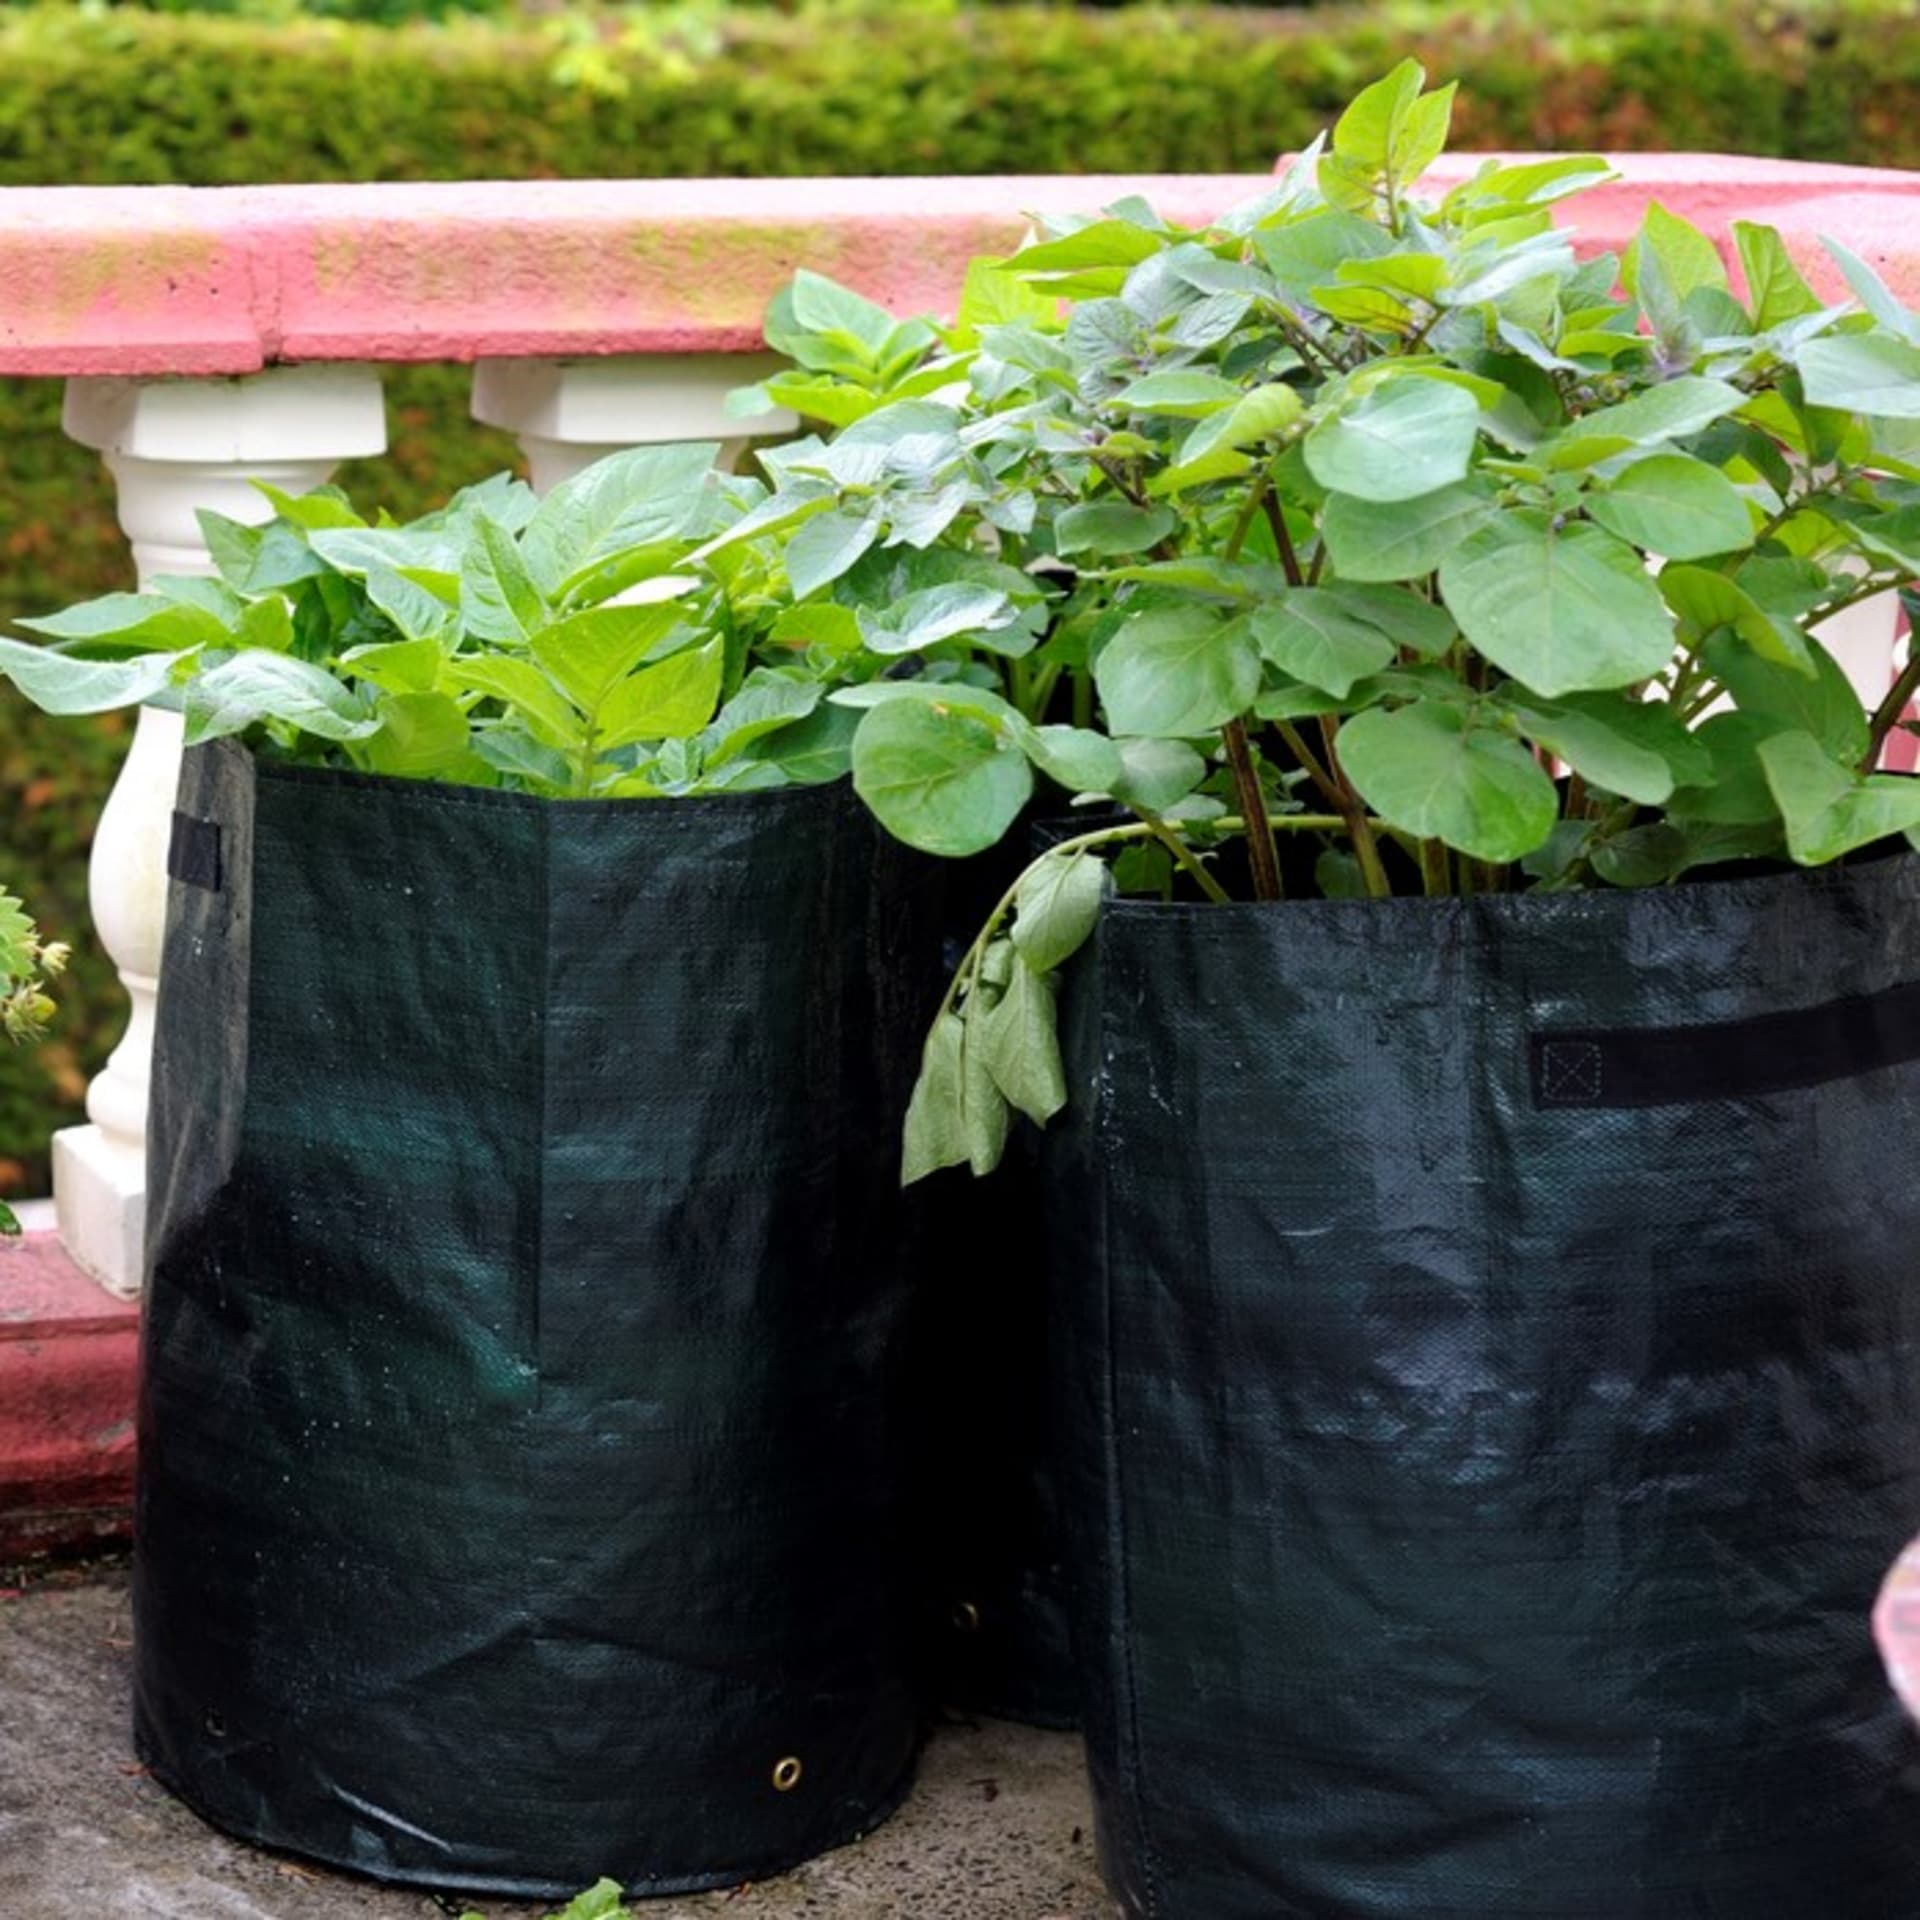 Brambory můžete pěstovat i na terase či balkóně třeba v pytlích.